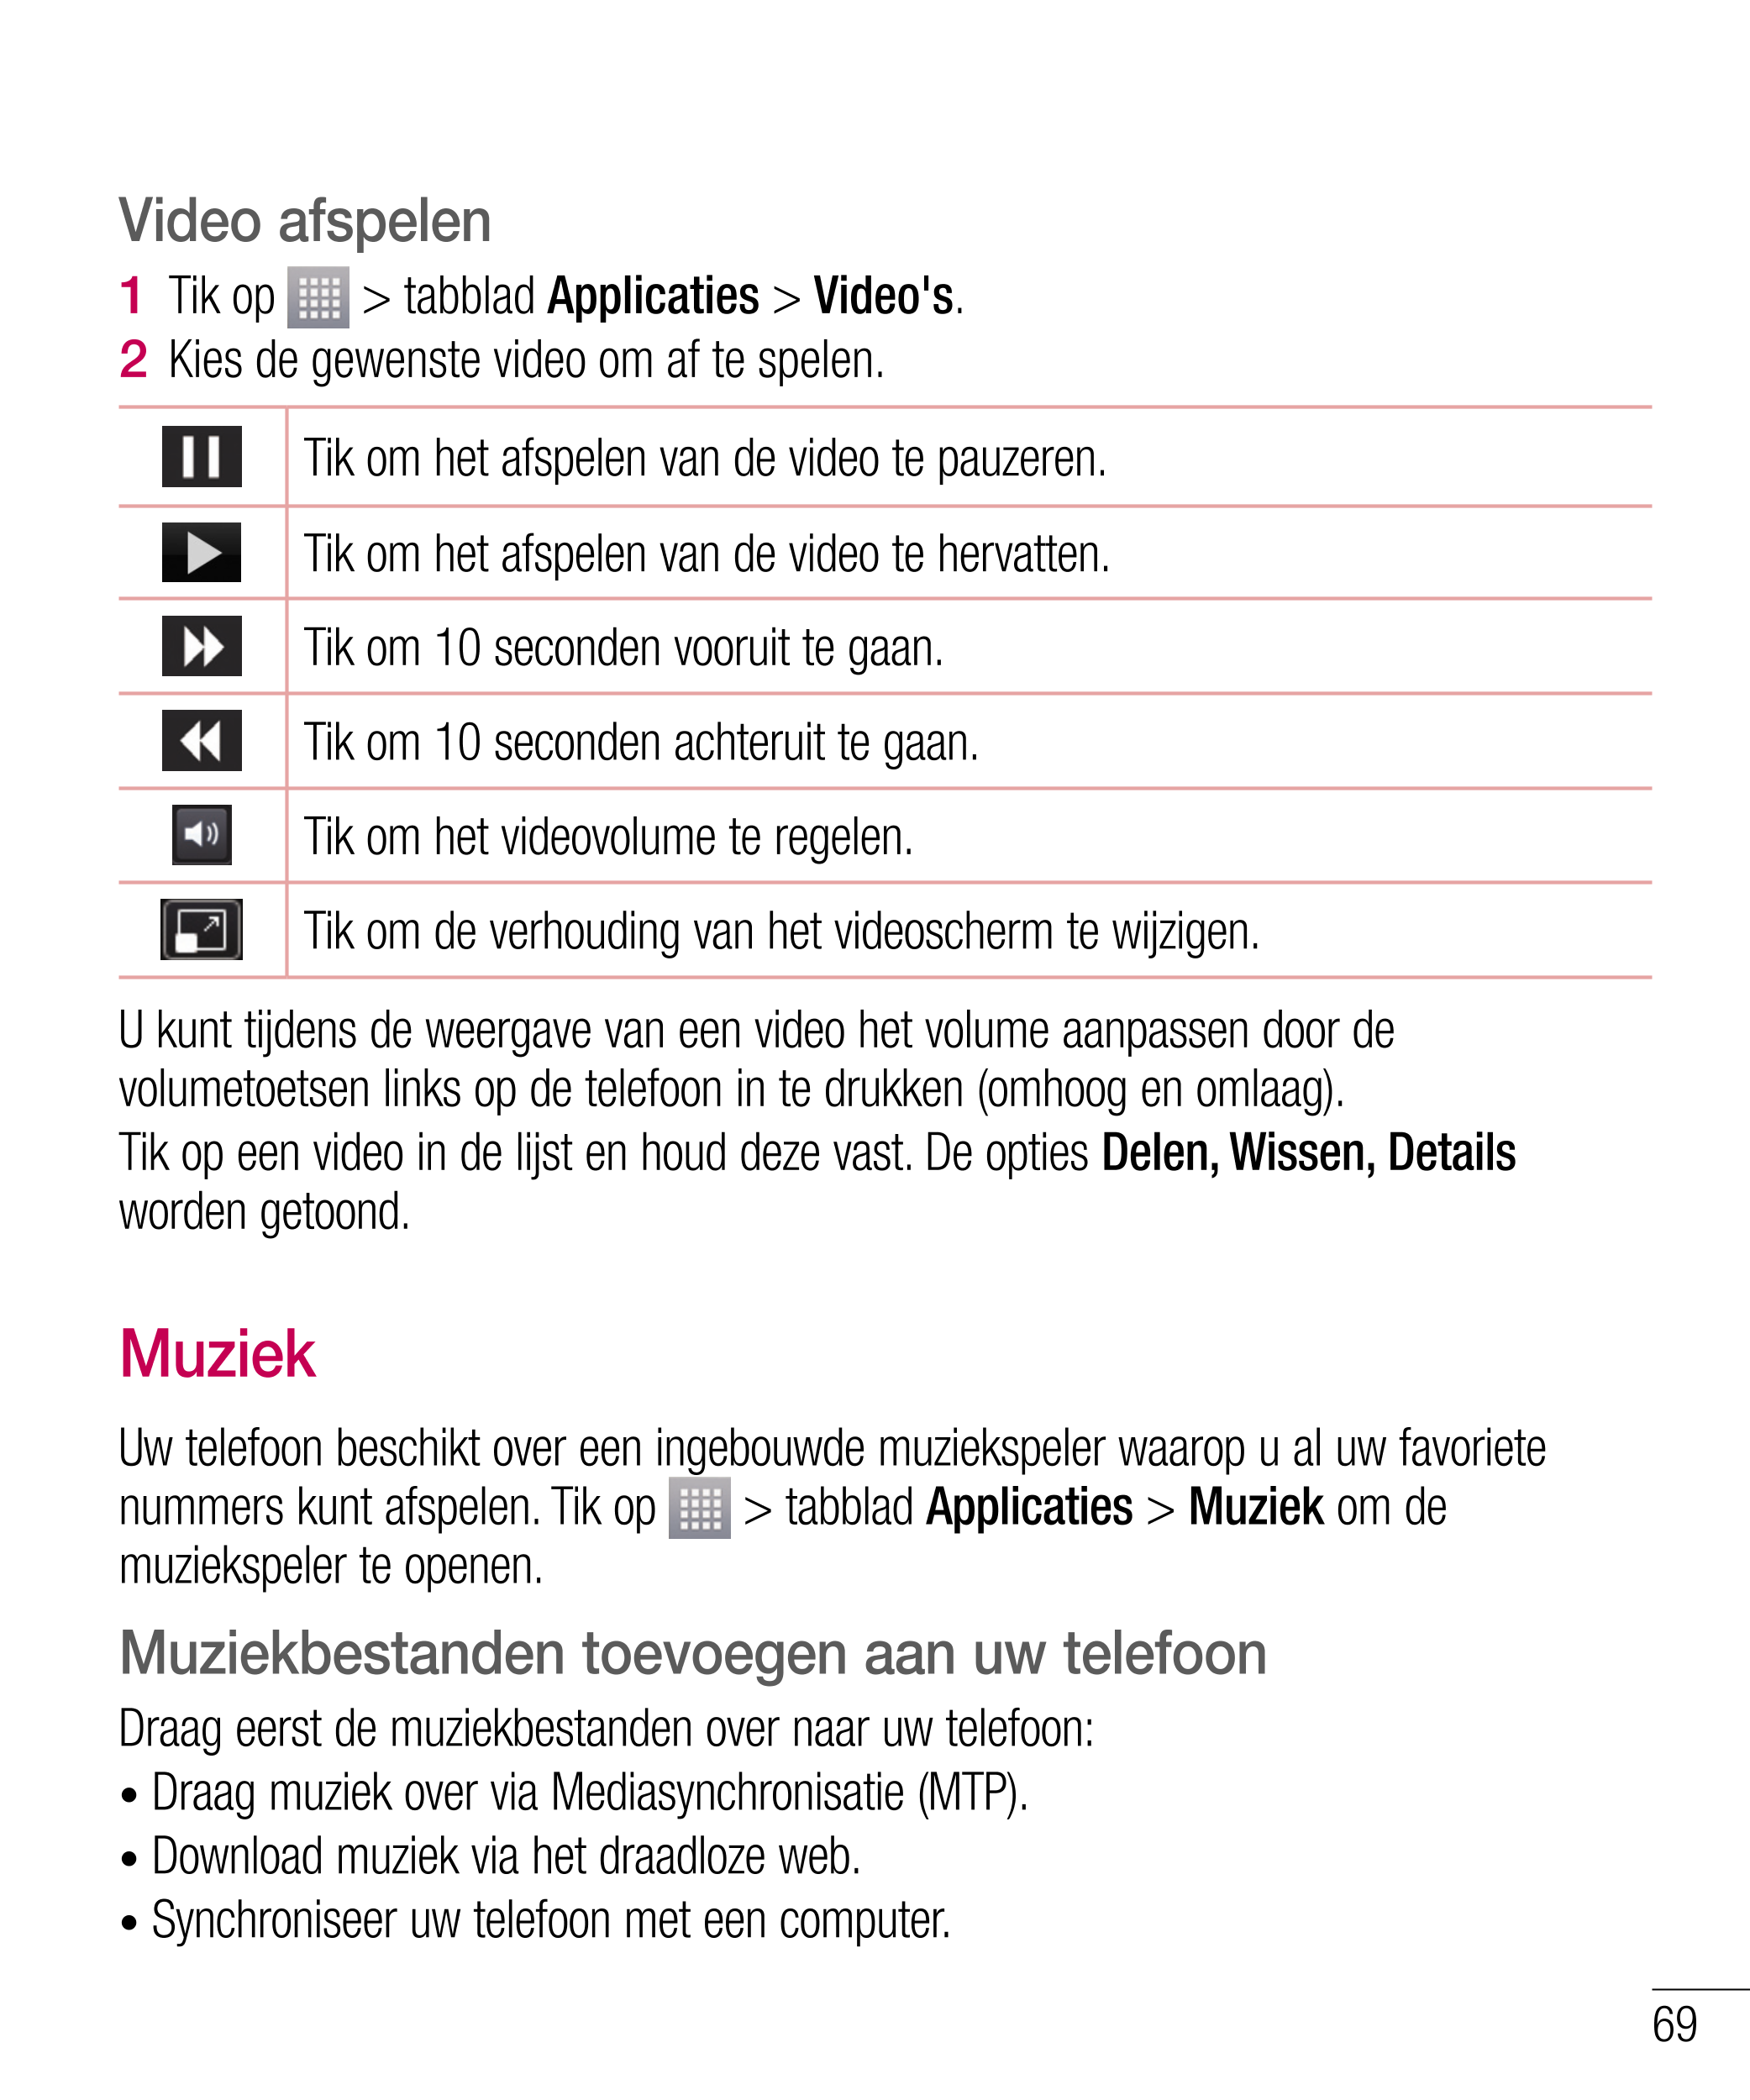 Multimedia
Video's afspelen Video afspelen
In het voorbeeldscherm van videobestanden wordt het pictogram   getoond. Kies de  1  